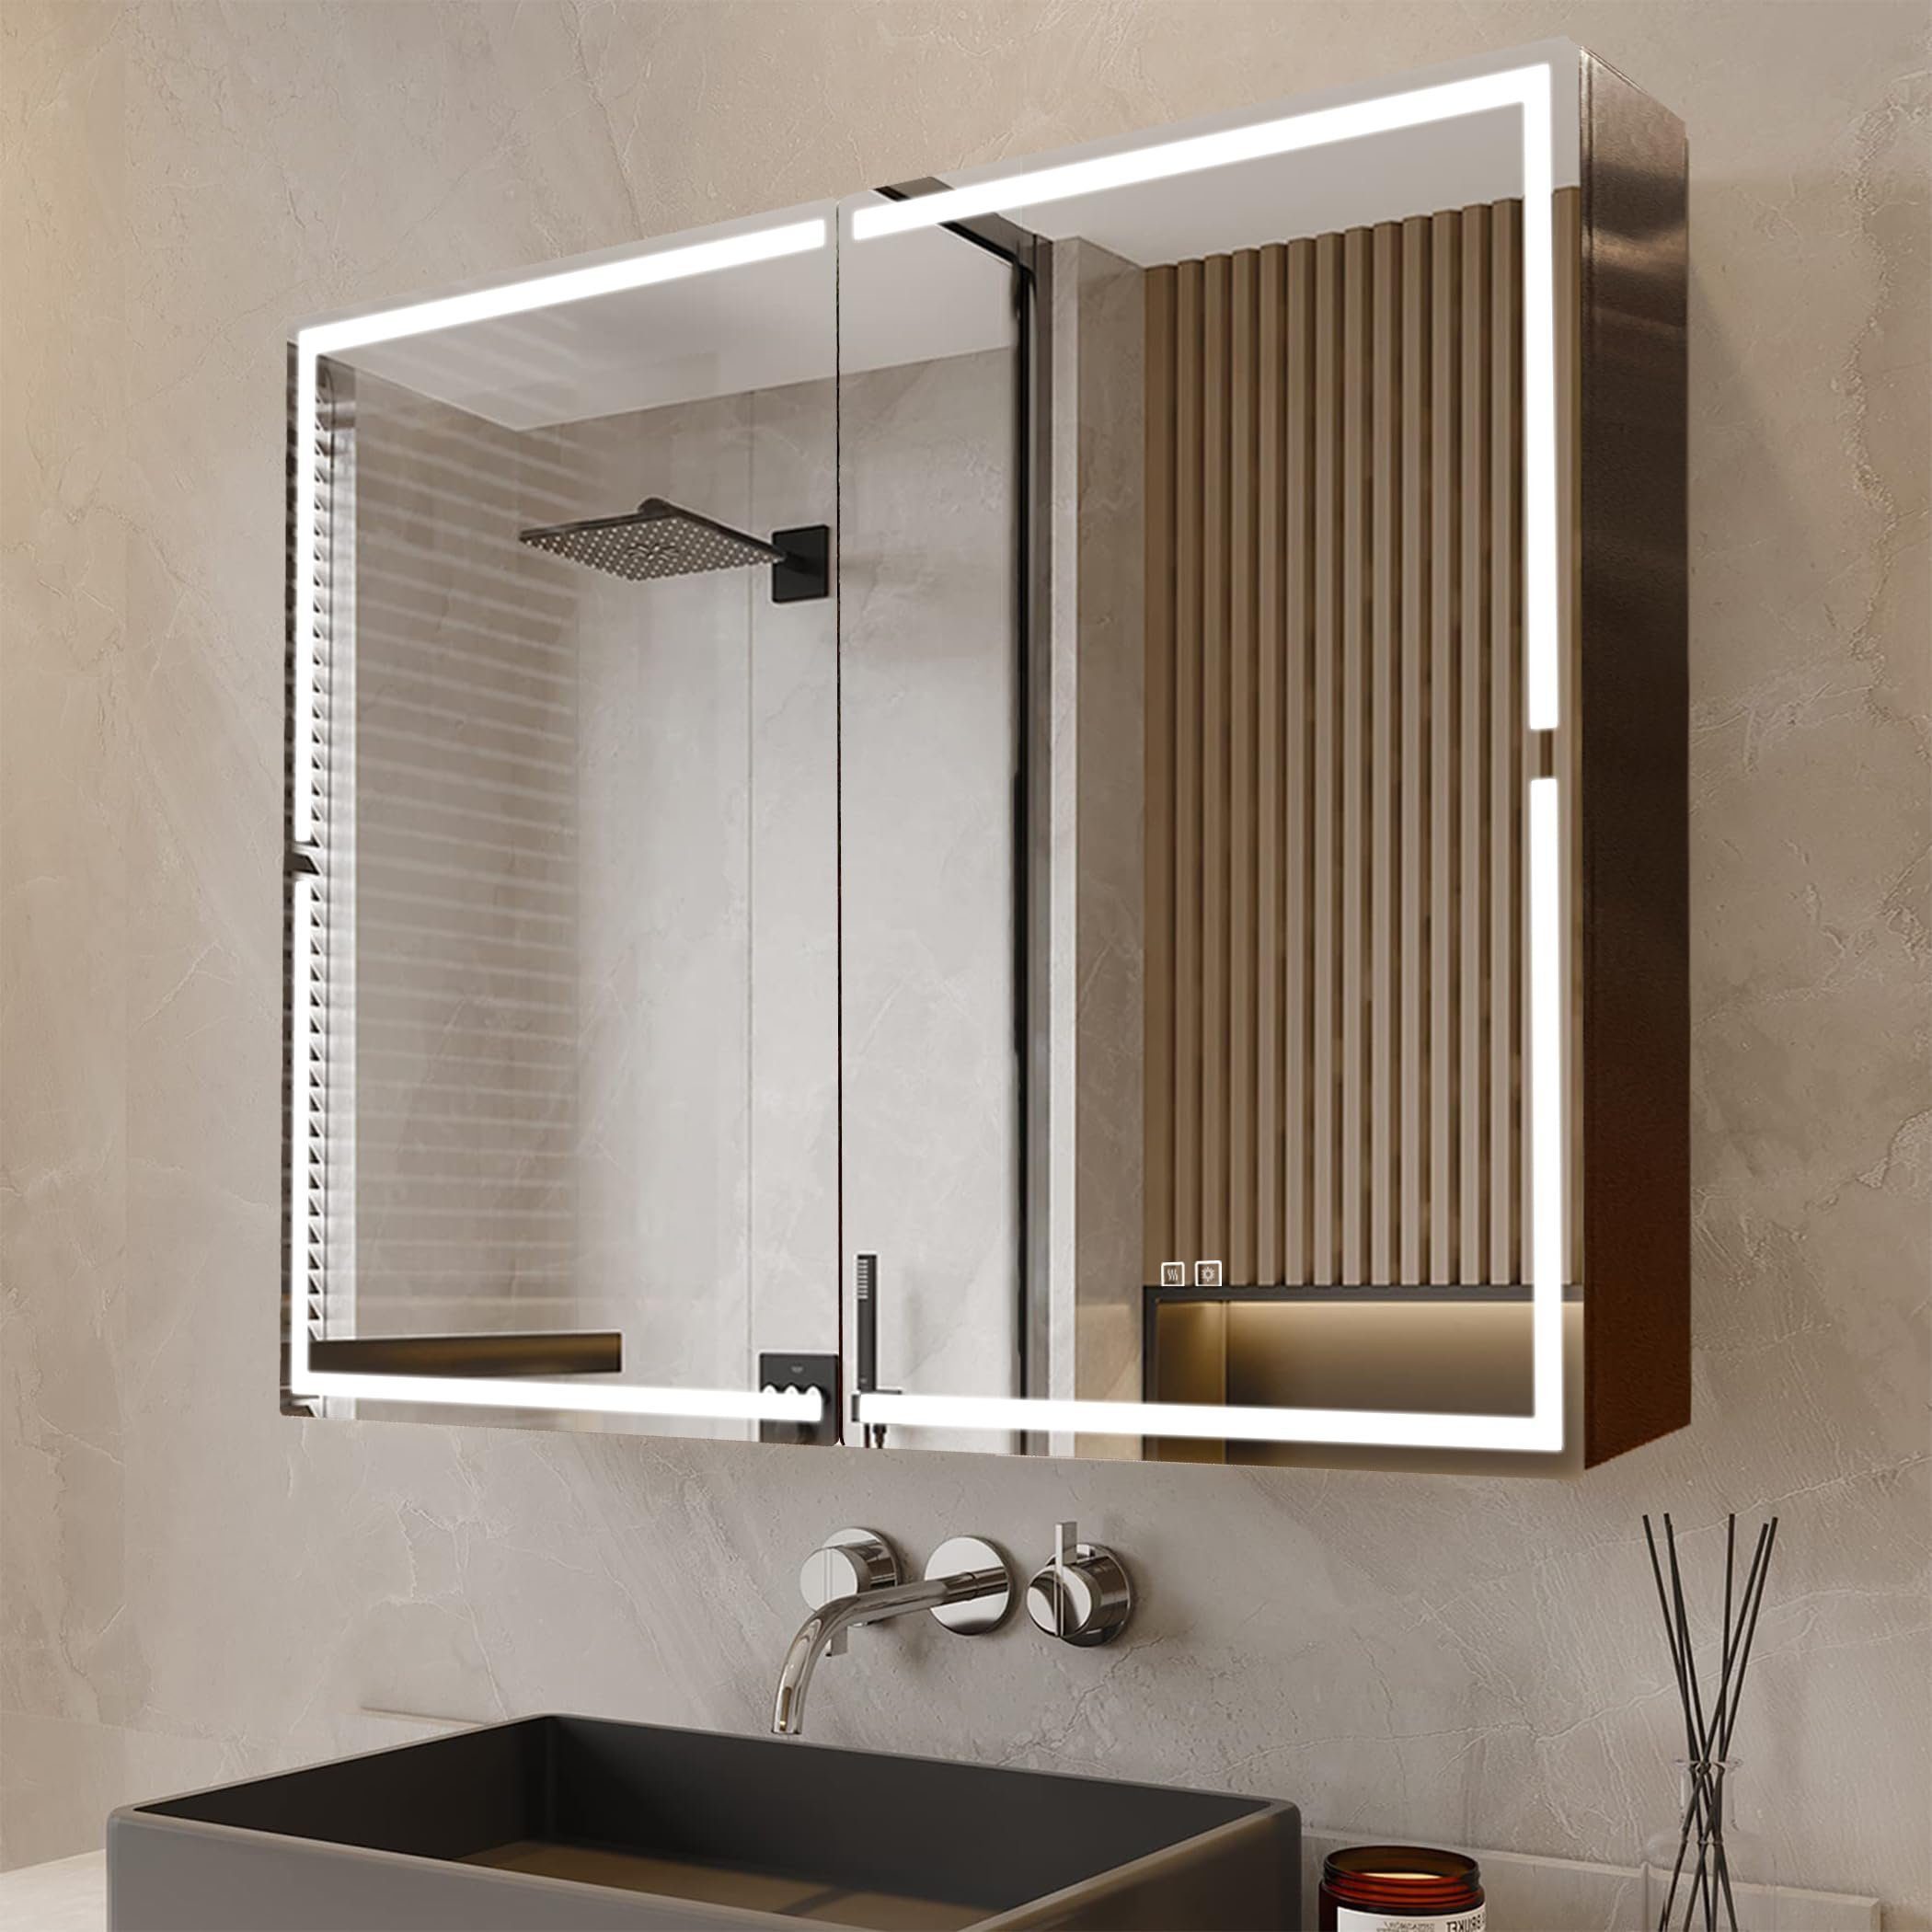 HT Badezimmerspiegelschrank (3-farbig dimmbar, Dehaze-Funktion, 100 x 70 x 13,8) Spiegelschrank Bad mit Beleuchtung, Braun